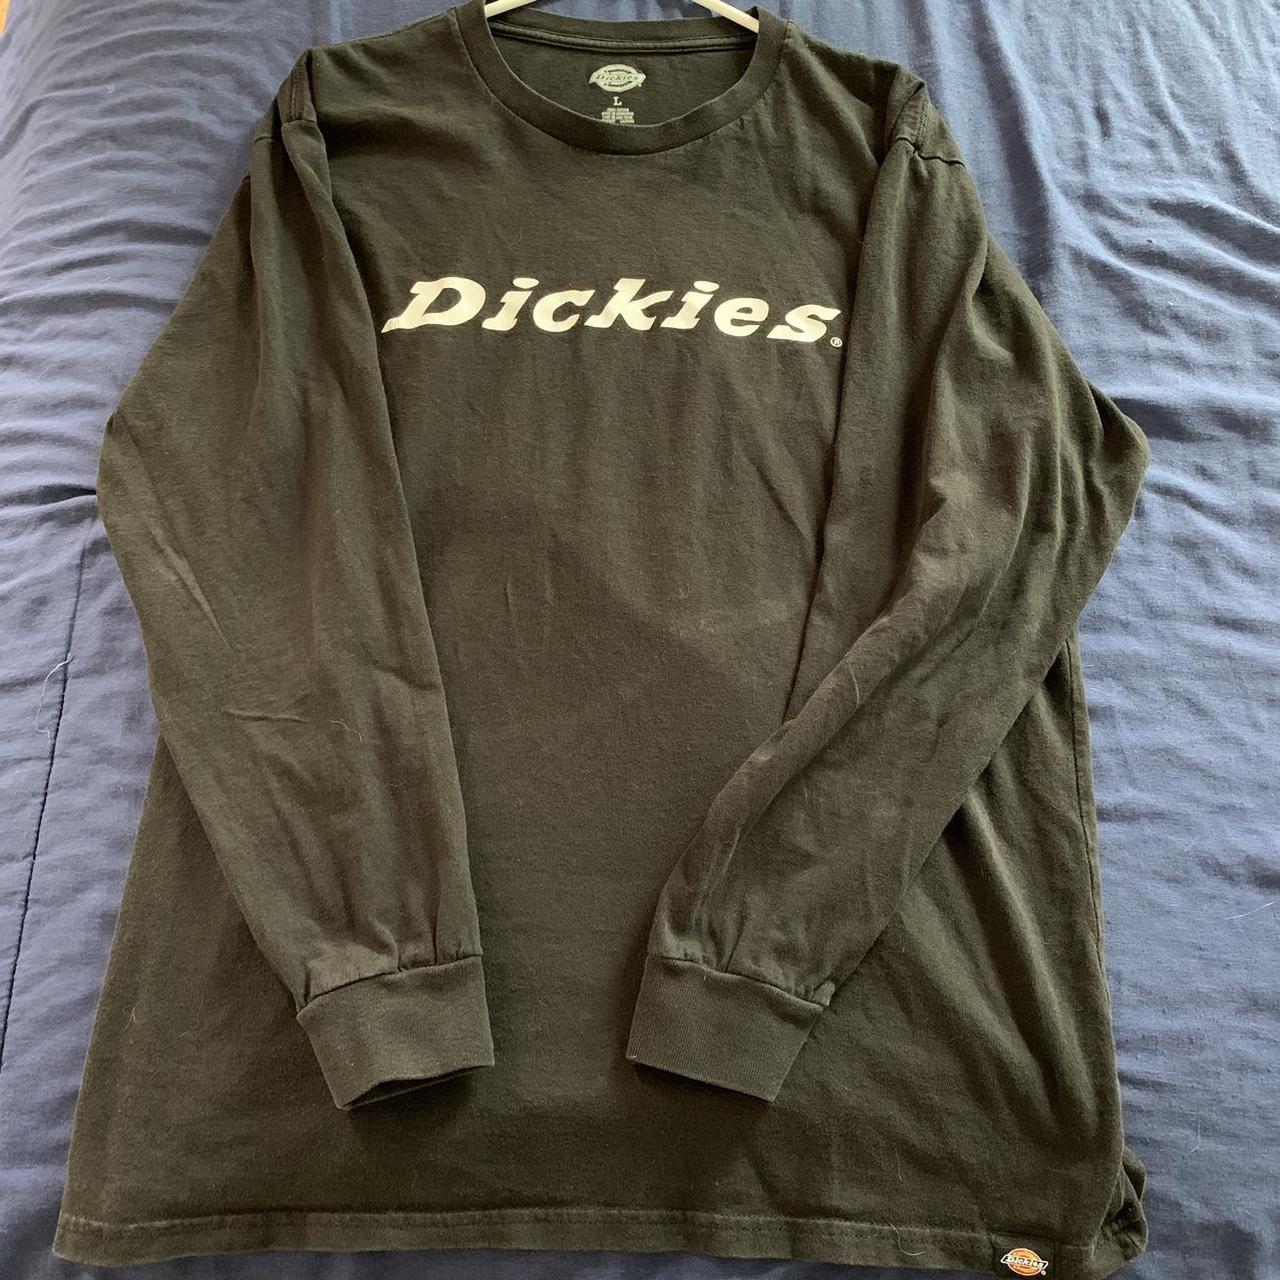 Dickies | Black | Long Sleeve Size Large Good... - Depop